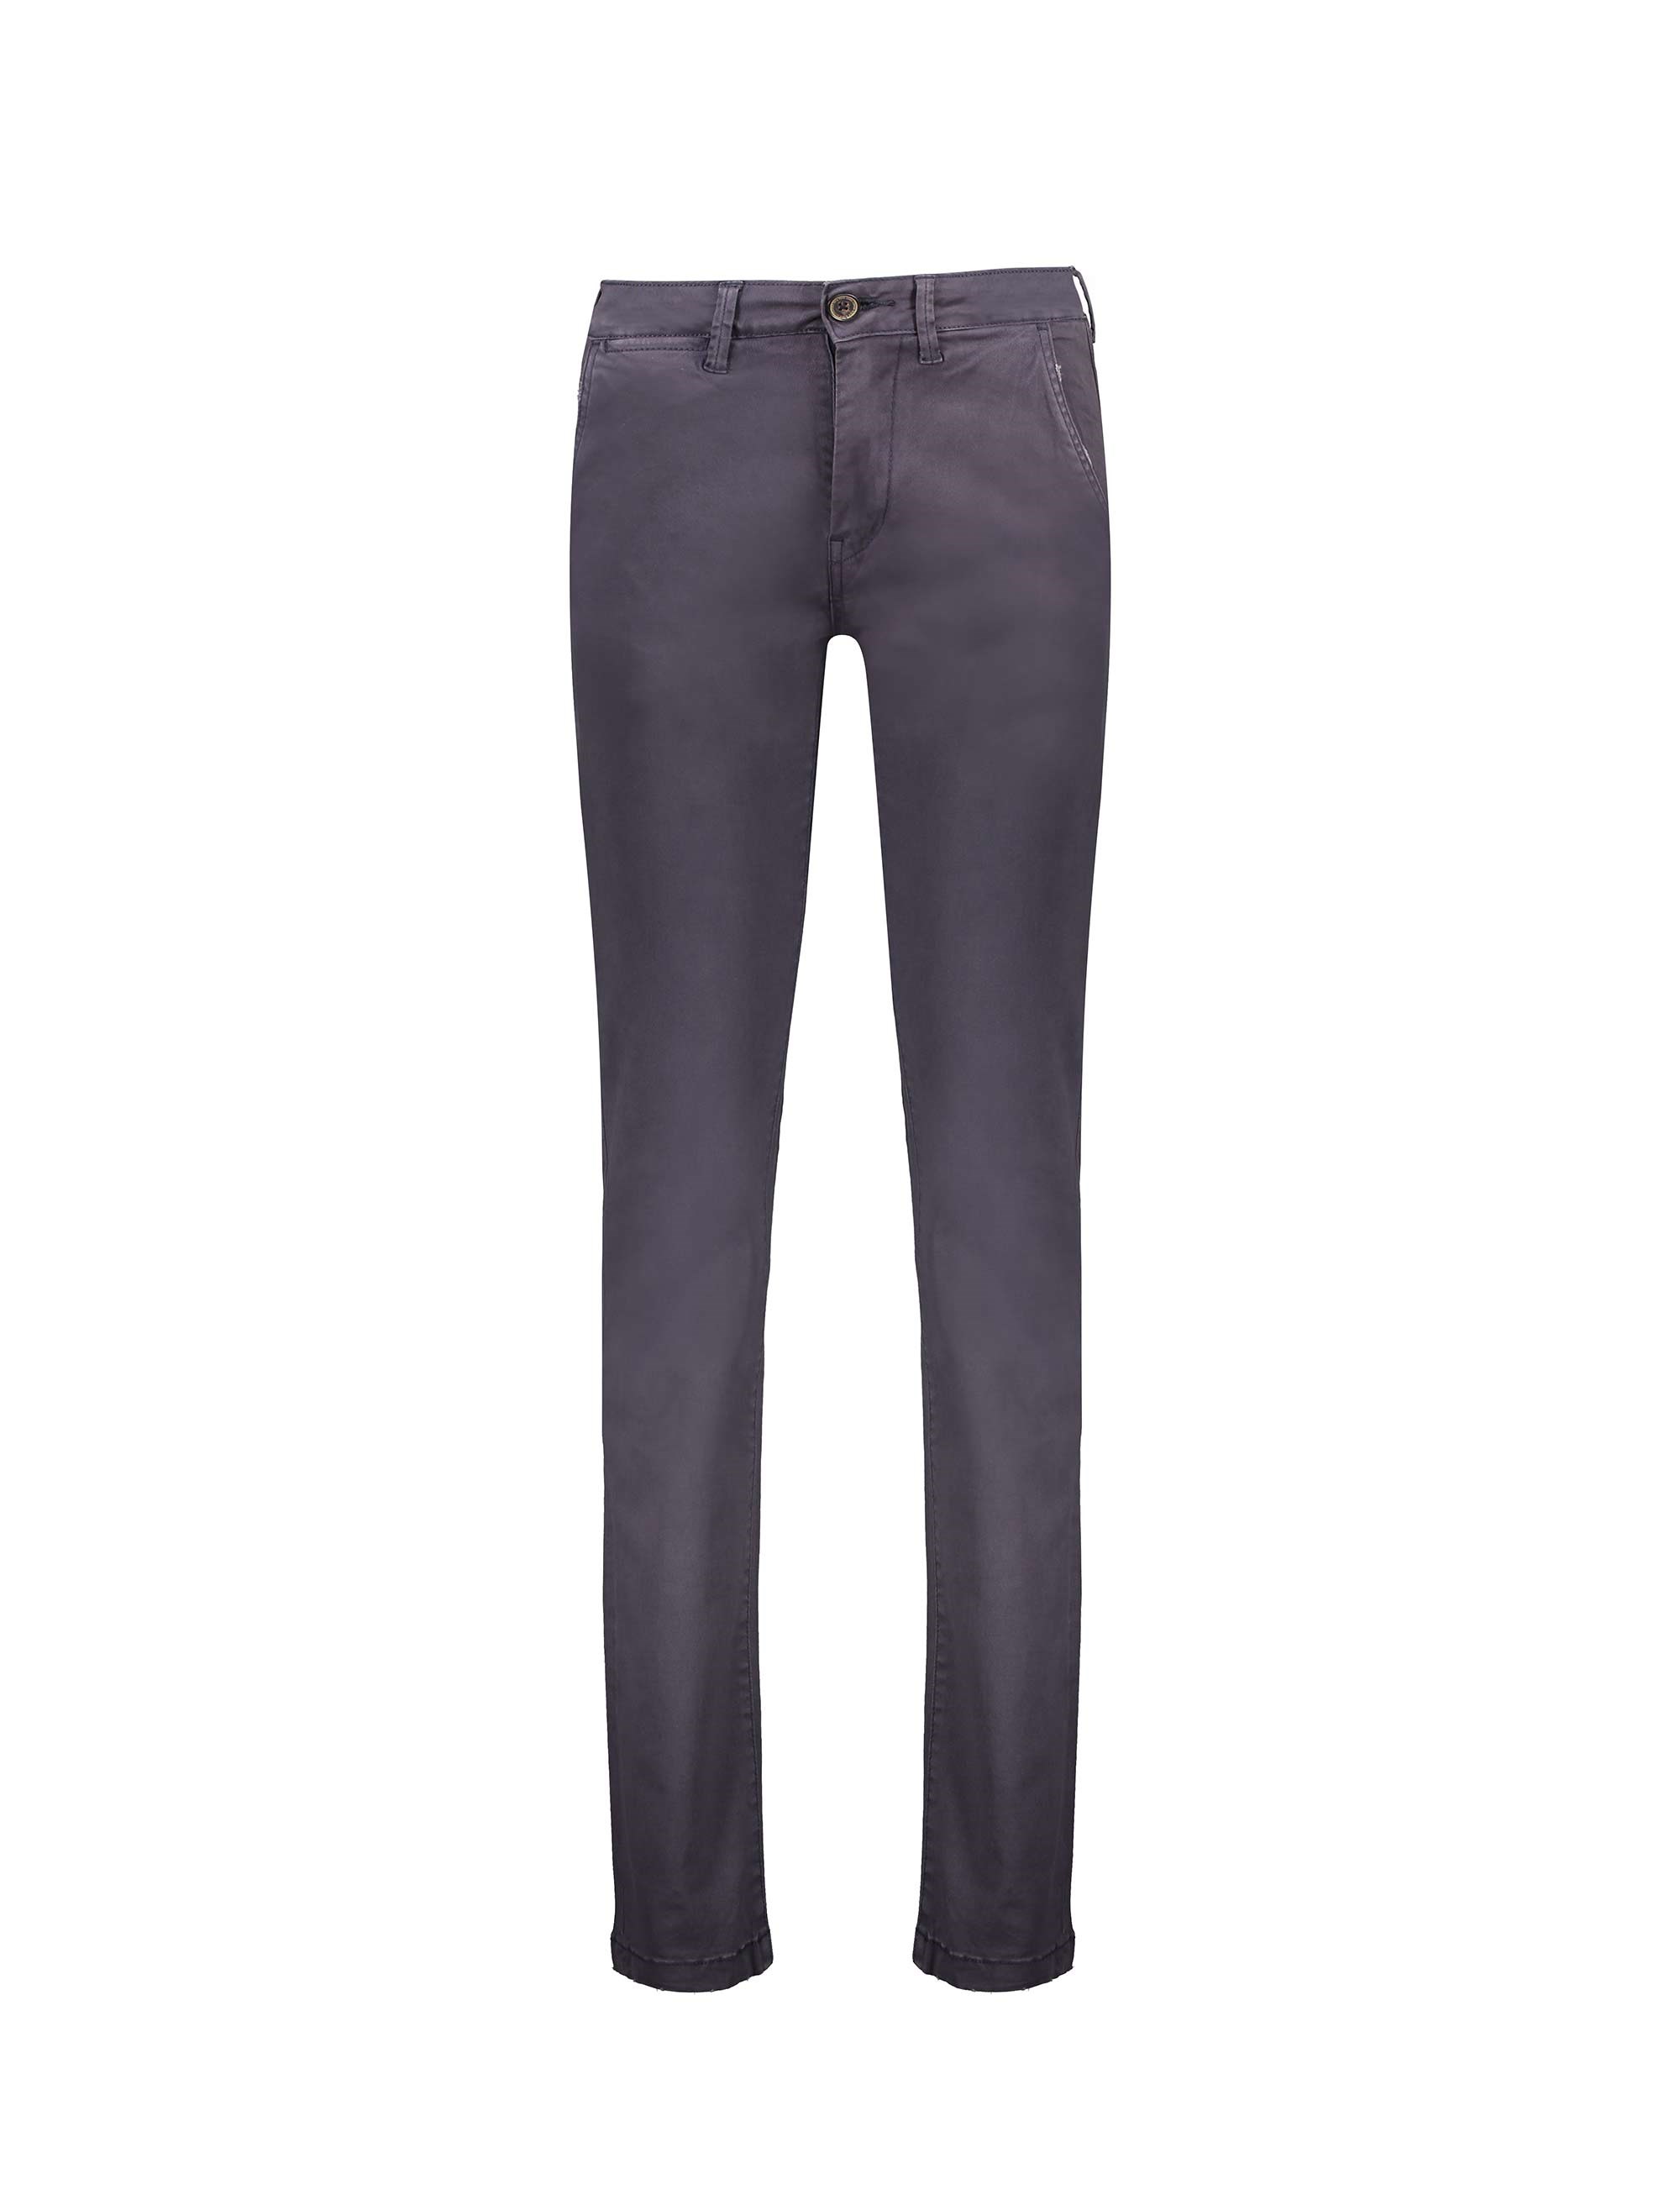 شلوار جین راسته مردانه Sloane - پپه جینز - زغالي - 1